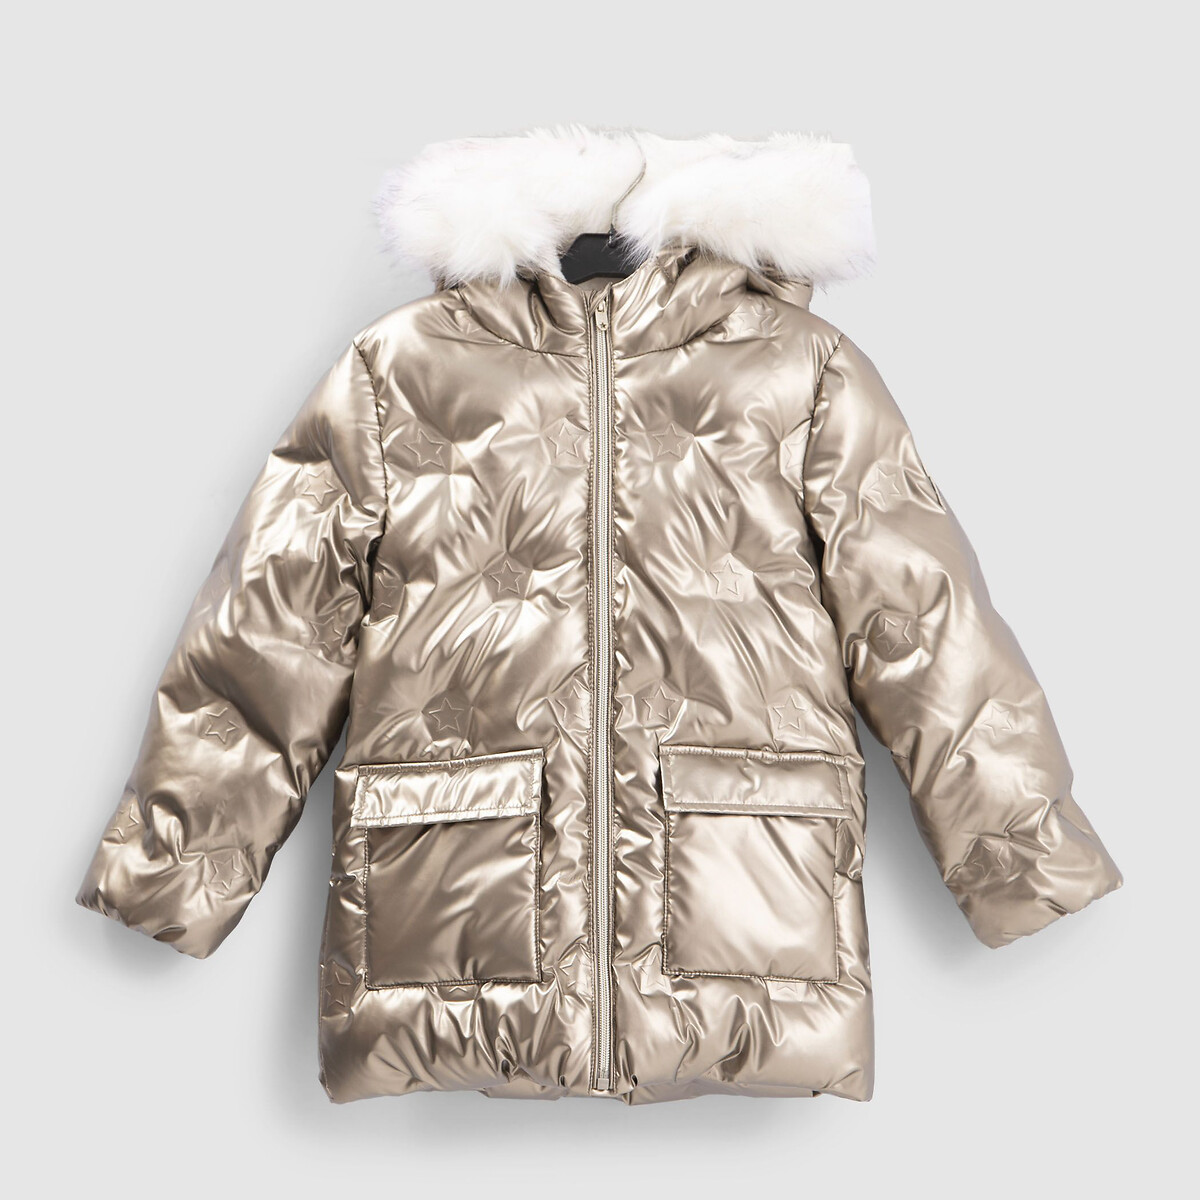 Куртка Стеганая с пришитым капюшоном зимняя модель 4-14 лет 6 лет - 114 см золотистый LaRedoute, размер 6 лет - 114 см - фото 1